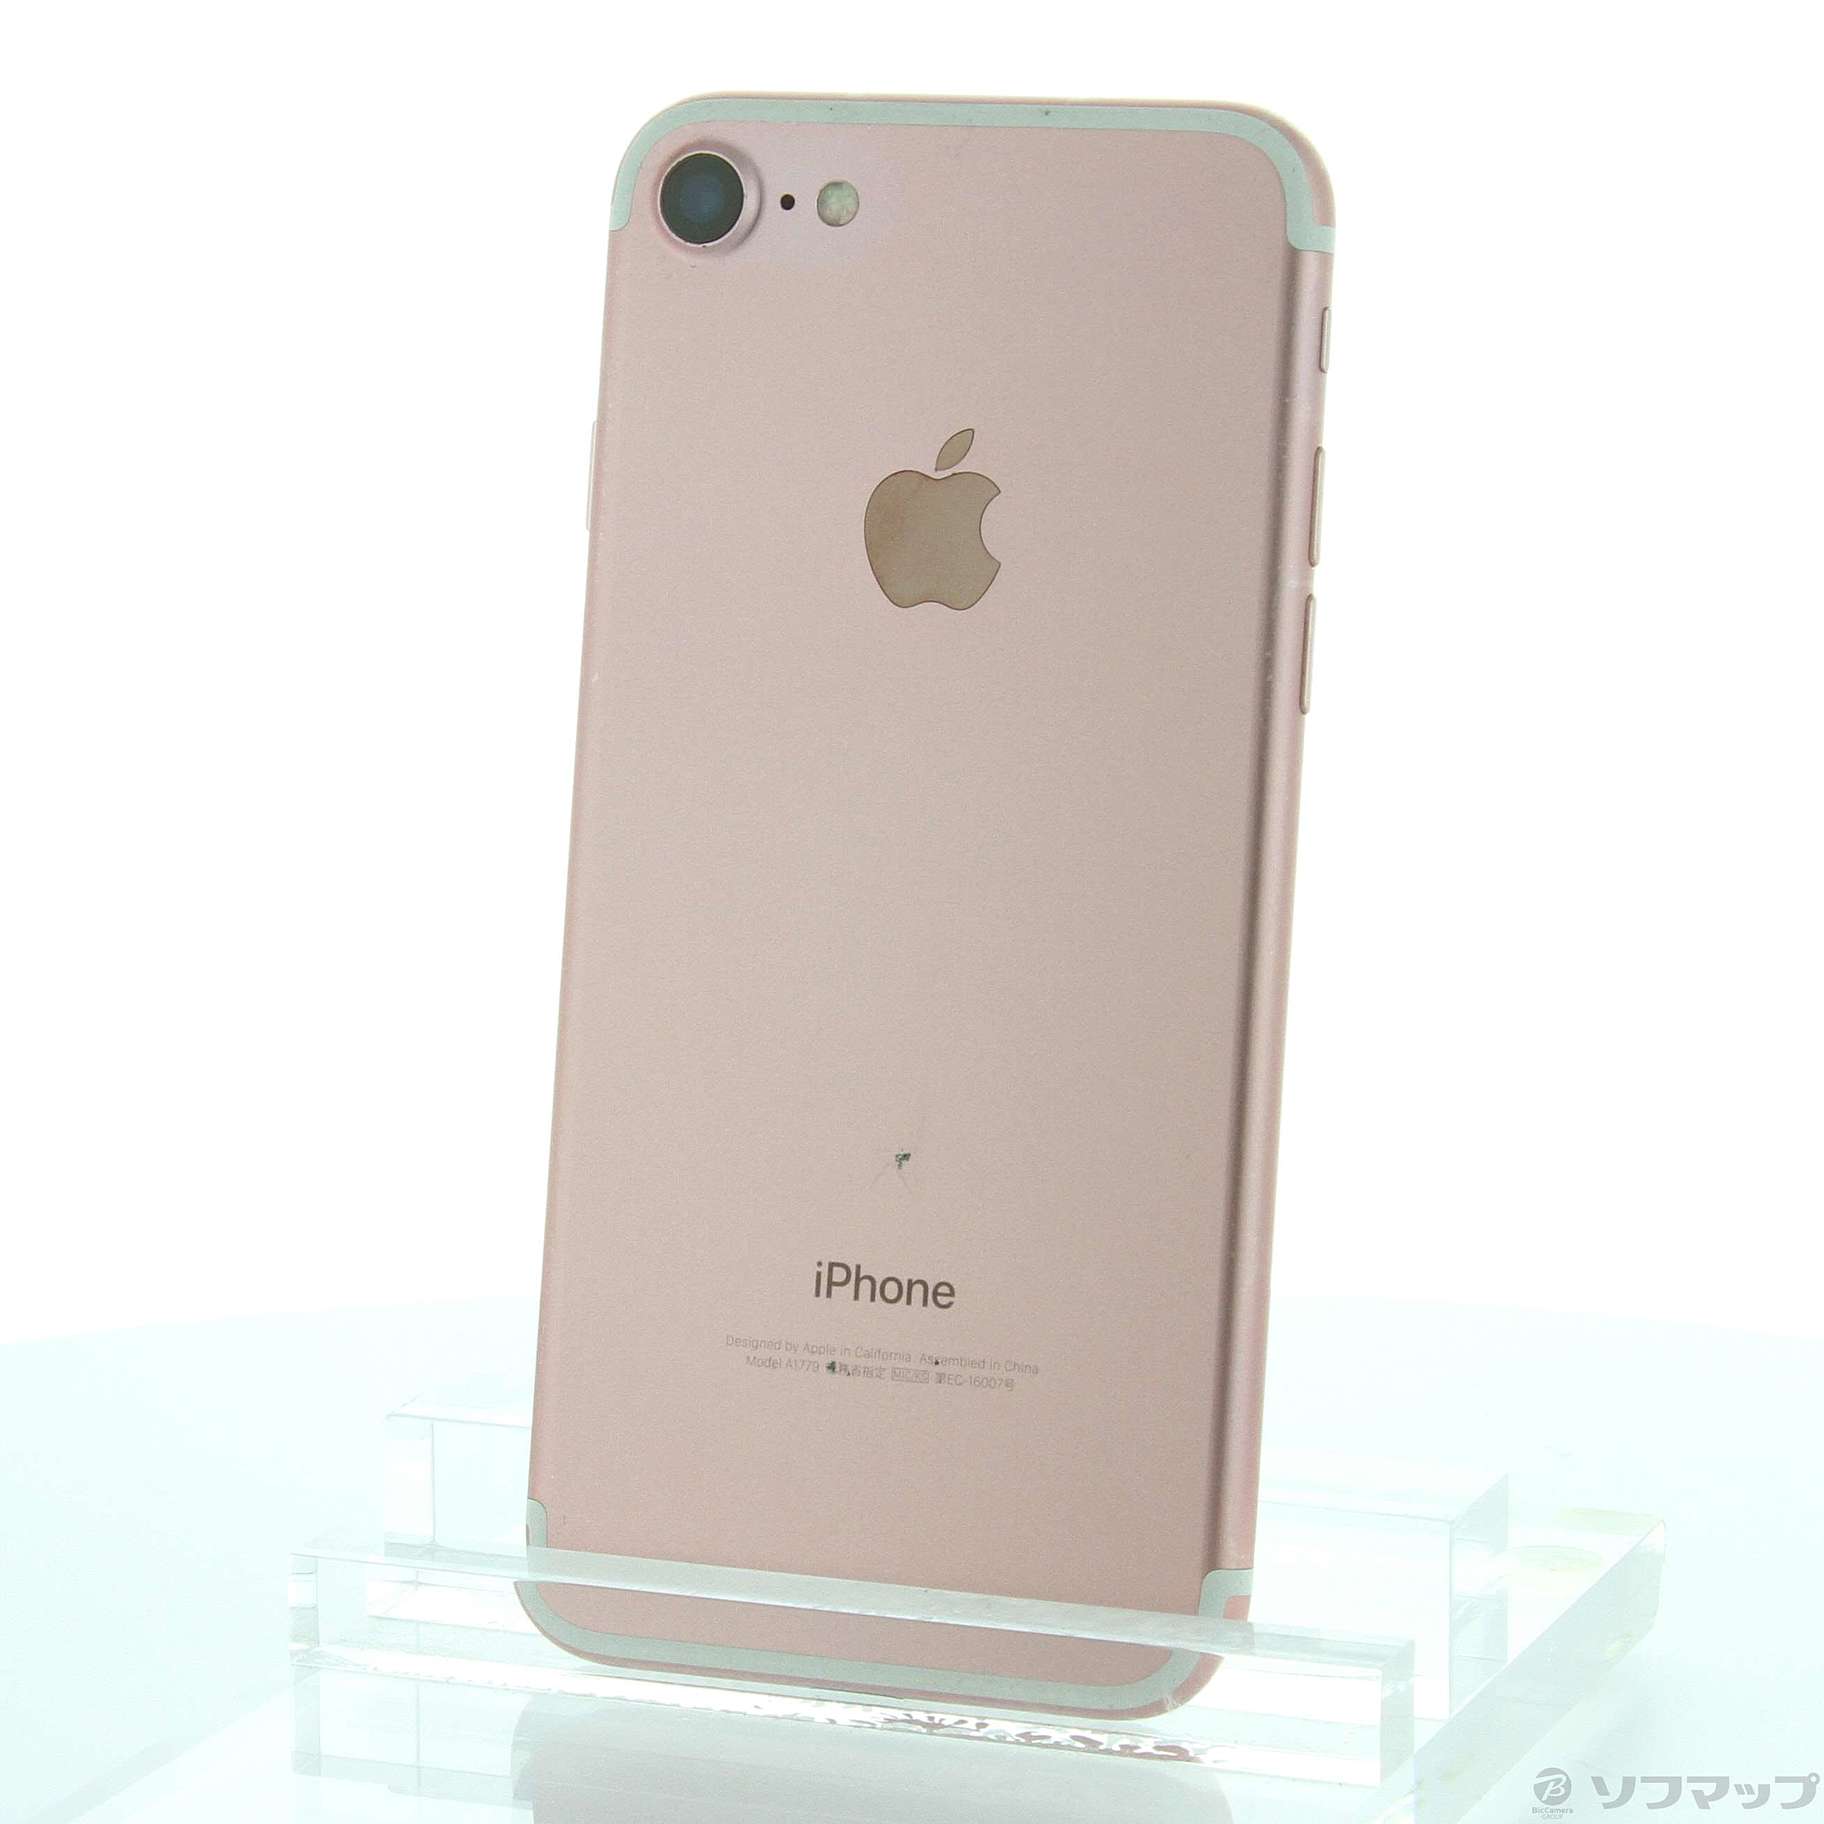 iPhone7 128GB ローズゴールド(ピンク) au